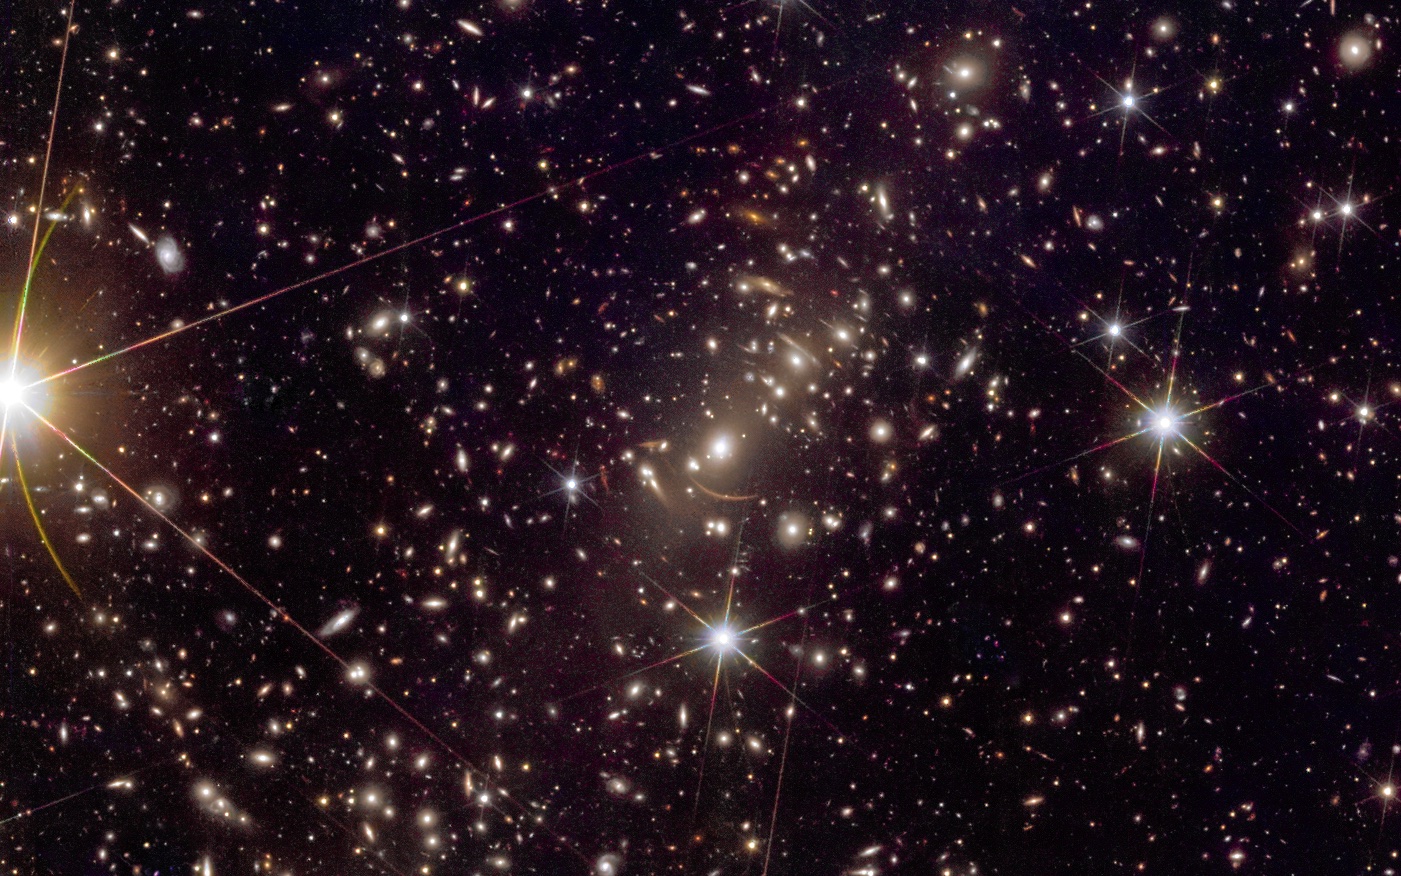 Az Abell 2390 galaxishalmaz, és a közepén kivehető, gravitációs lencsehatás által létrehozott ívek a Euclid űrtávcső felvételén. A kép az eredeti egy kivágott részlete.